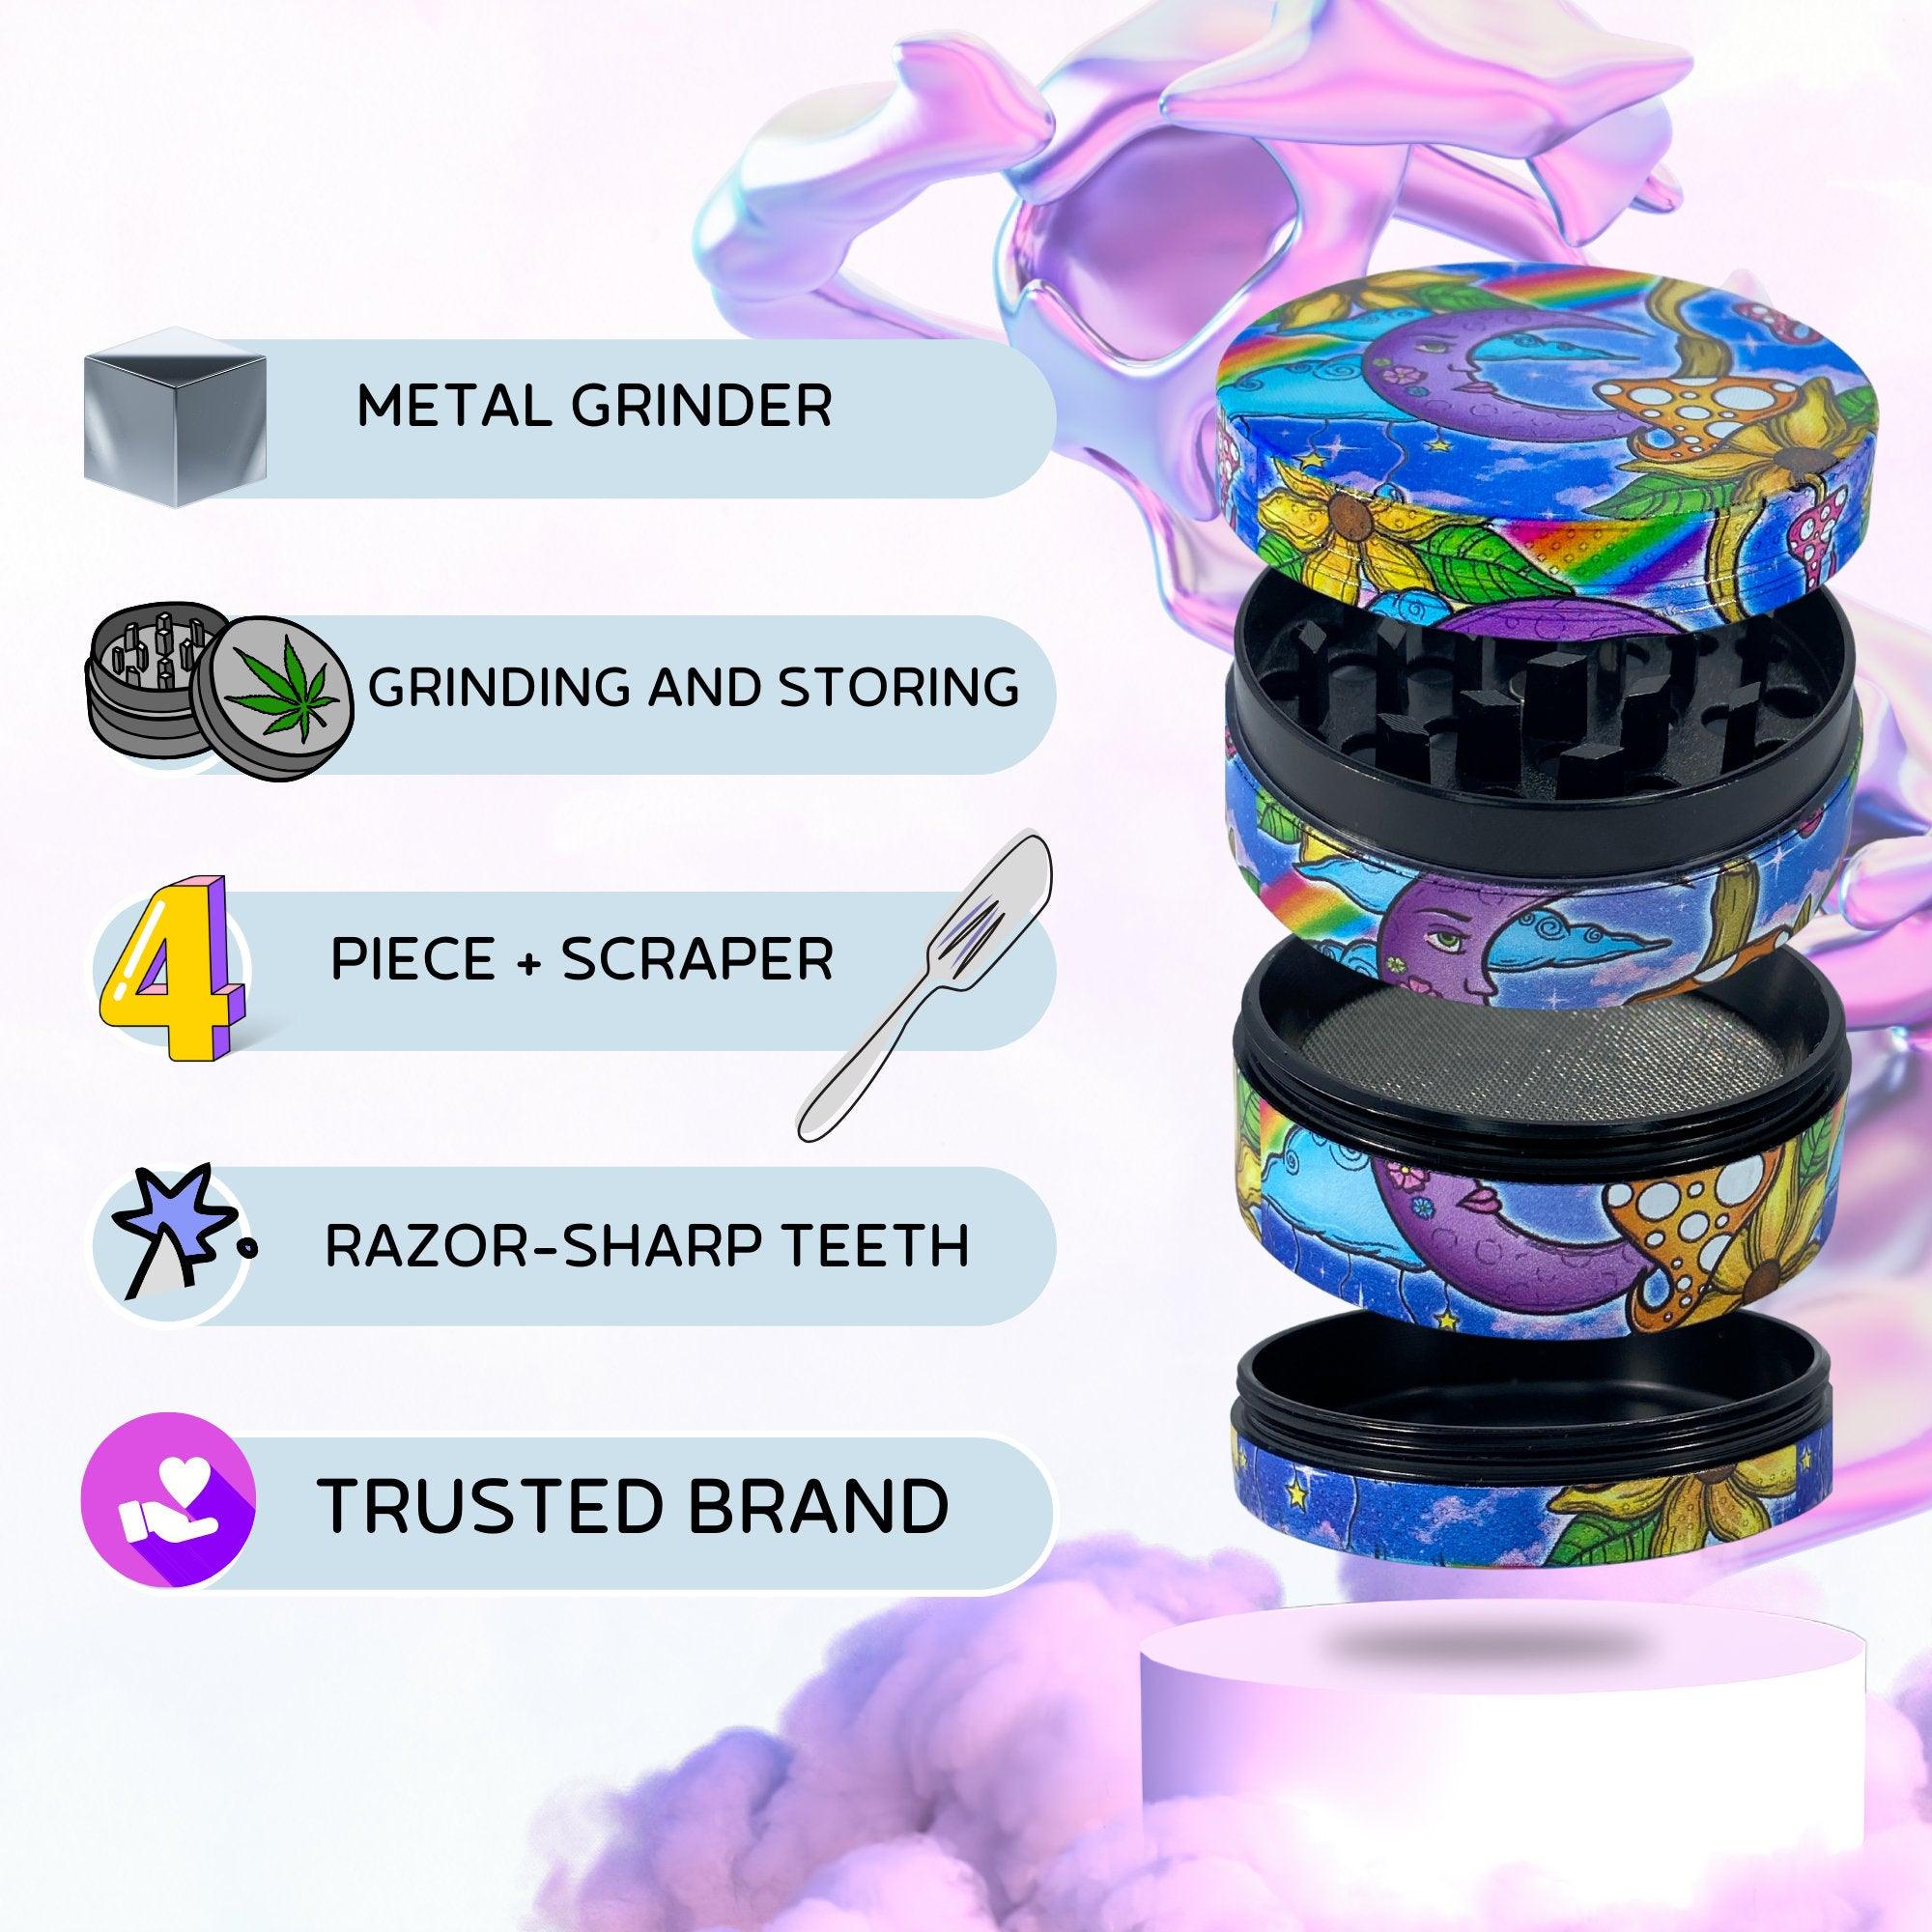 Weed Grinder | Moon Mushroom, Rainbow, marijuana grinders, weed accessories, 4 piece grinder, metal grinder, cannabis, Flowers, Trippy Girly